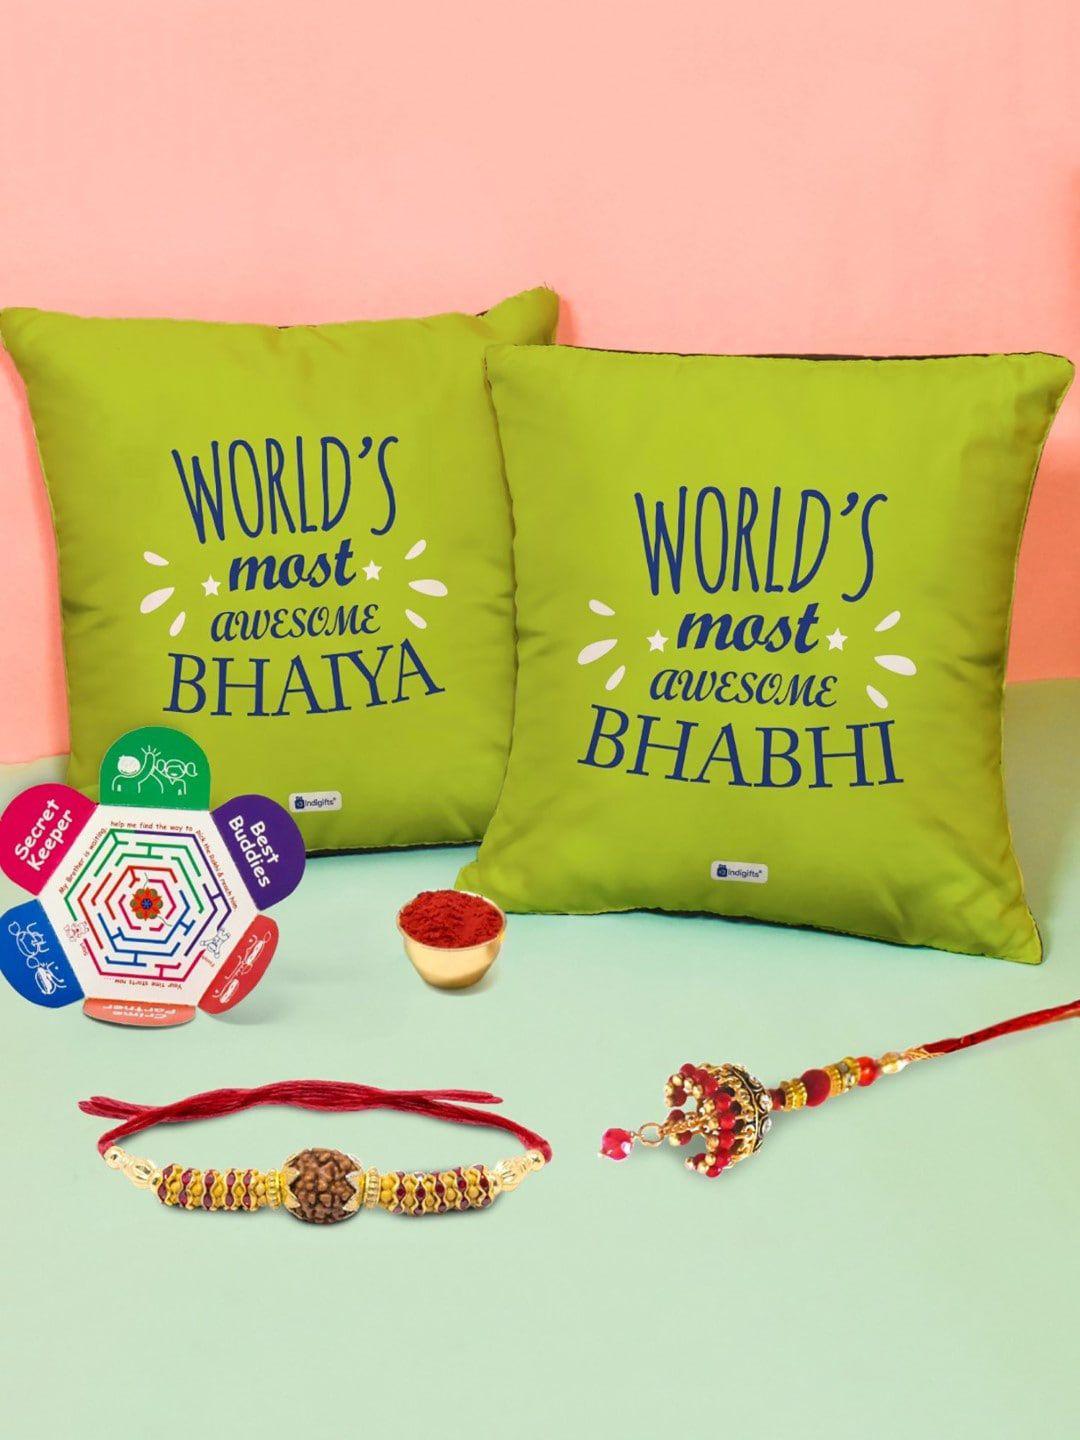 indigifts bhaiya bhabhi rudraksha rakhi with 2 cushions